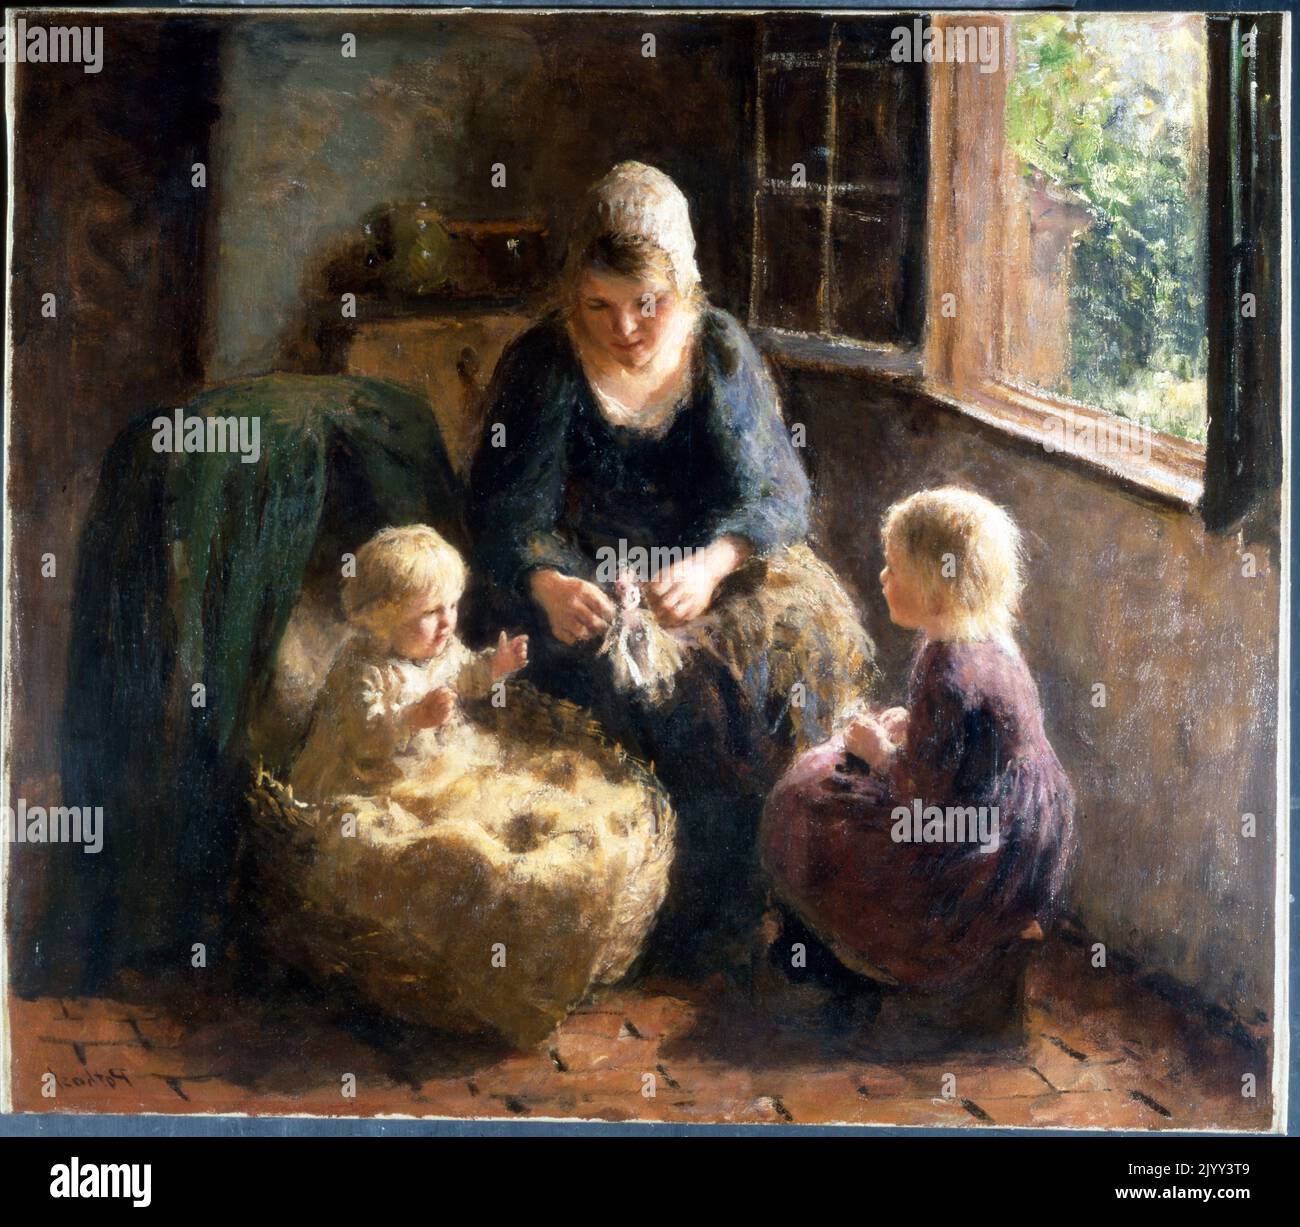 Playing with the Baby circa 1912 de Bernard Pothast (1882-1966), pintor holandés de origen belga. Sus temas consistían en madres con sus hijos, utilizando el Realismo Académico Tradicional para crear retratos de la maternidad. Foto de stock